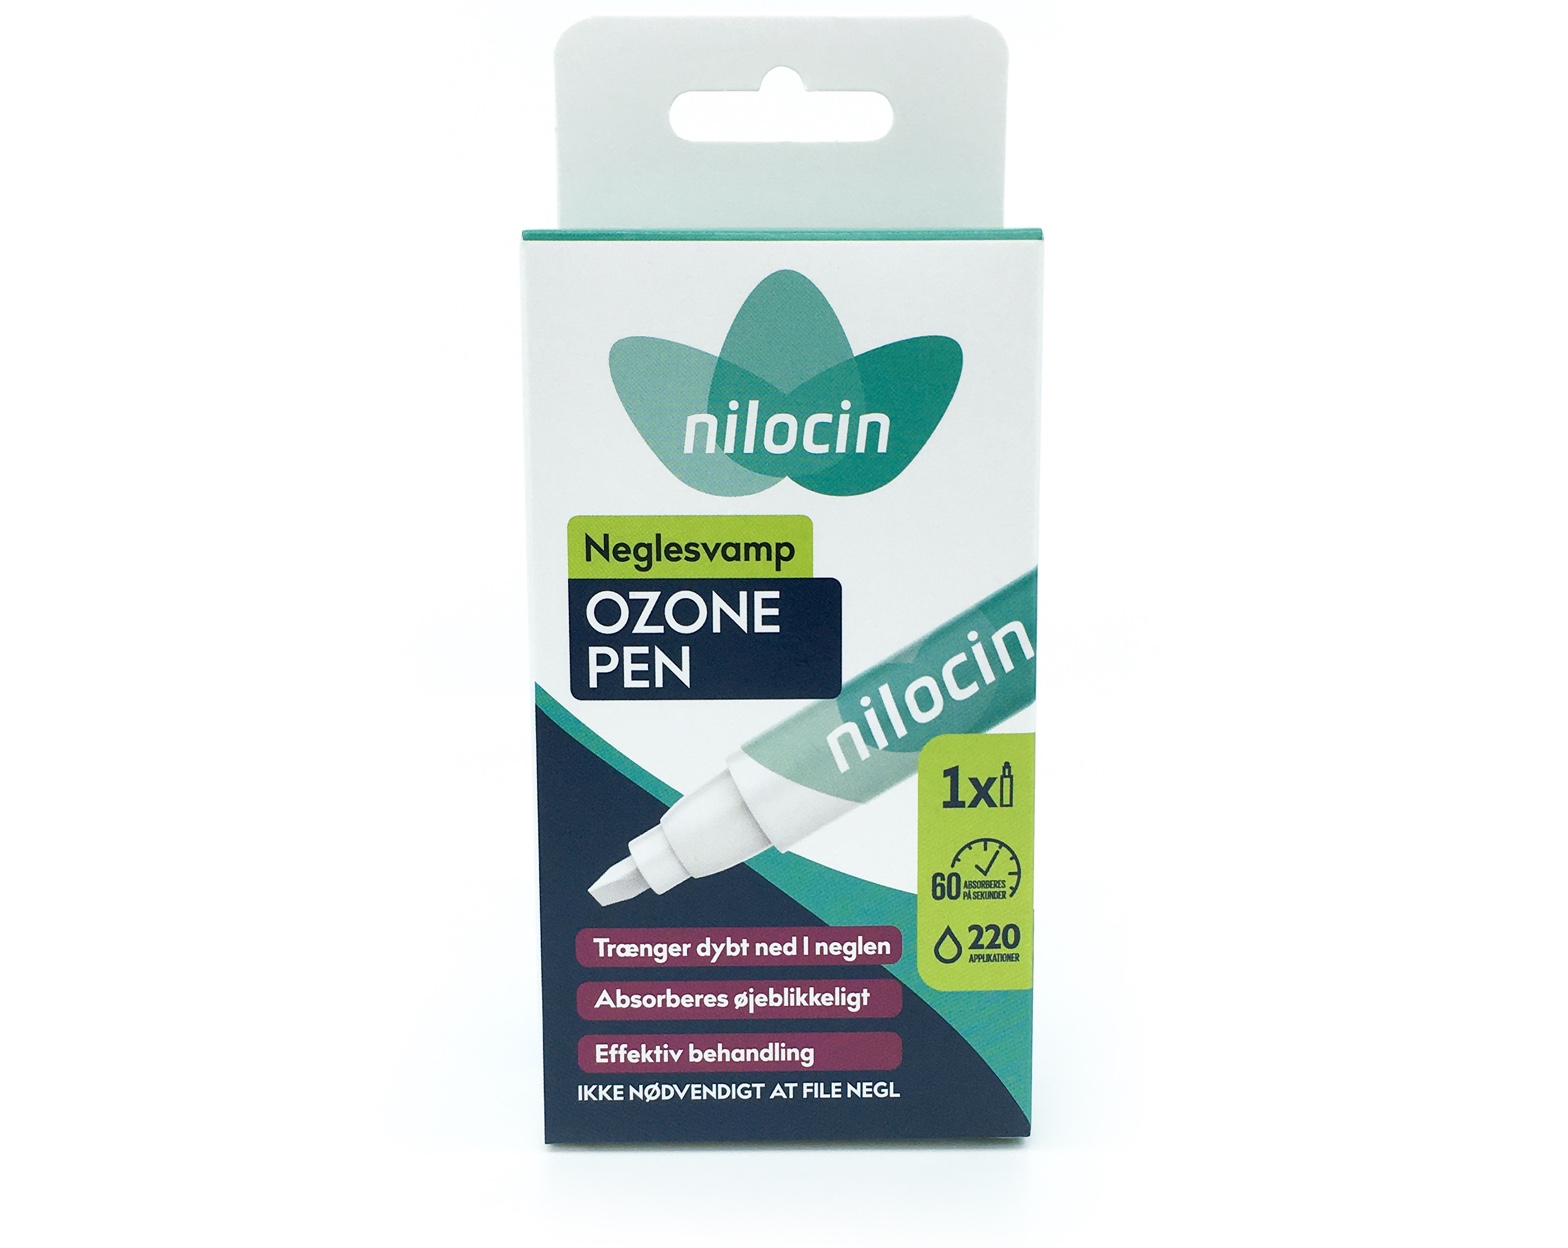 Nilocin Neglesvamp Ozone Pen